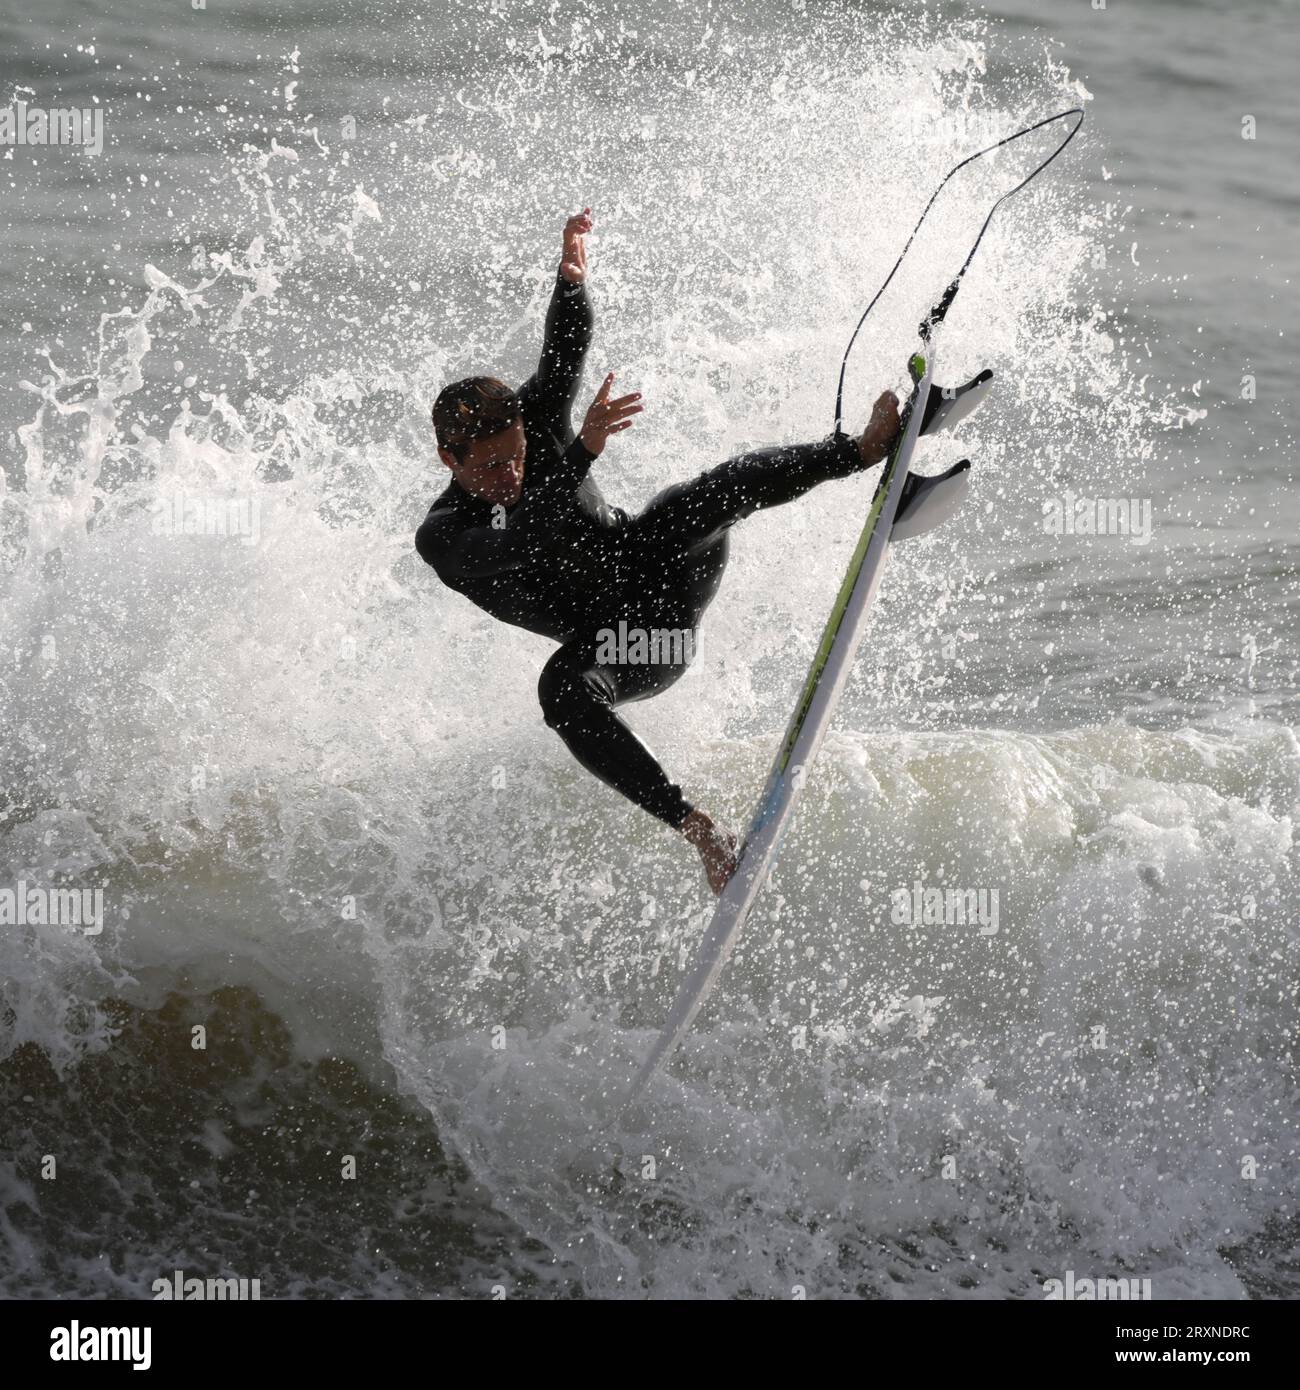 Le surfeur Patrick Langdon Dark se produit à la pause galloise locale en préparation pour les Jeux Olympiques de Paris 2024 Banque D'Images